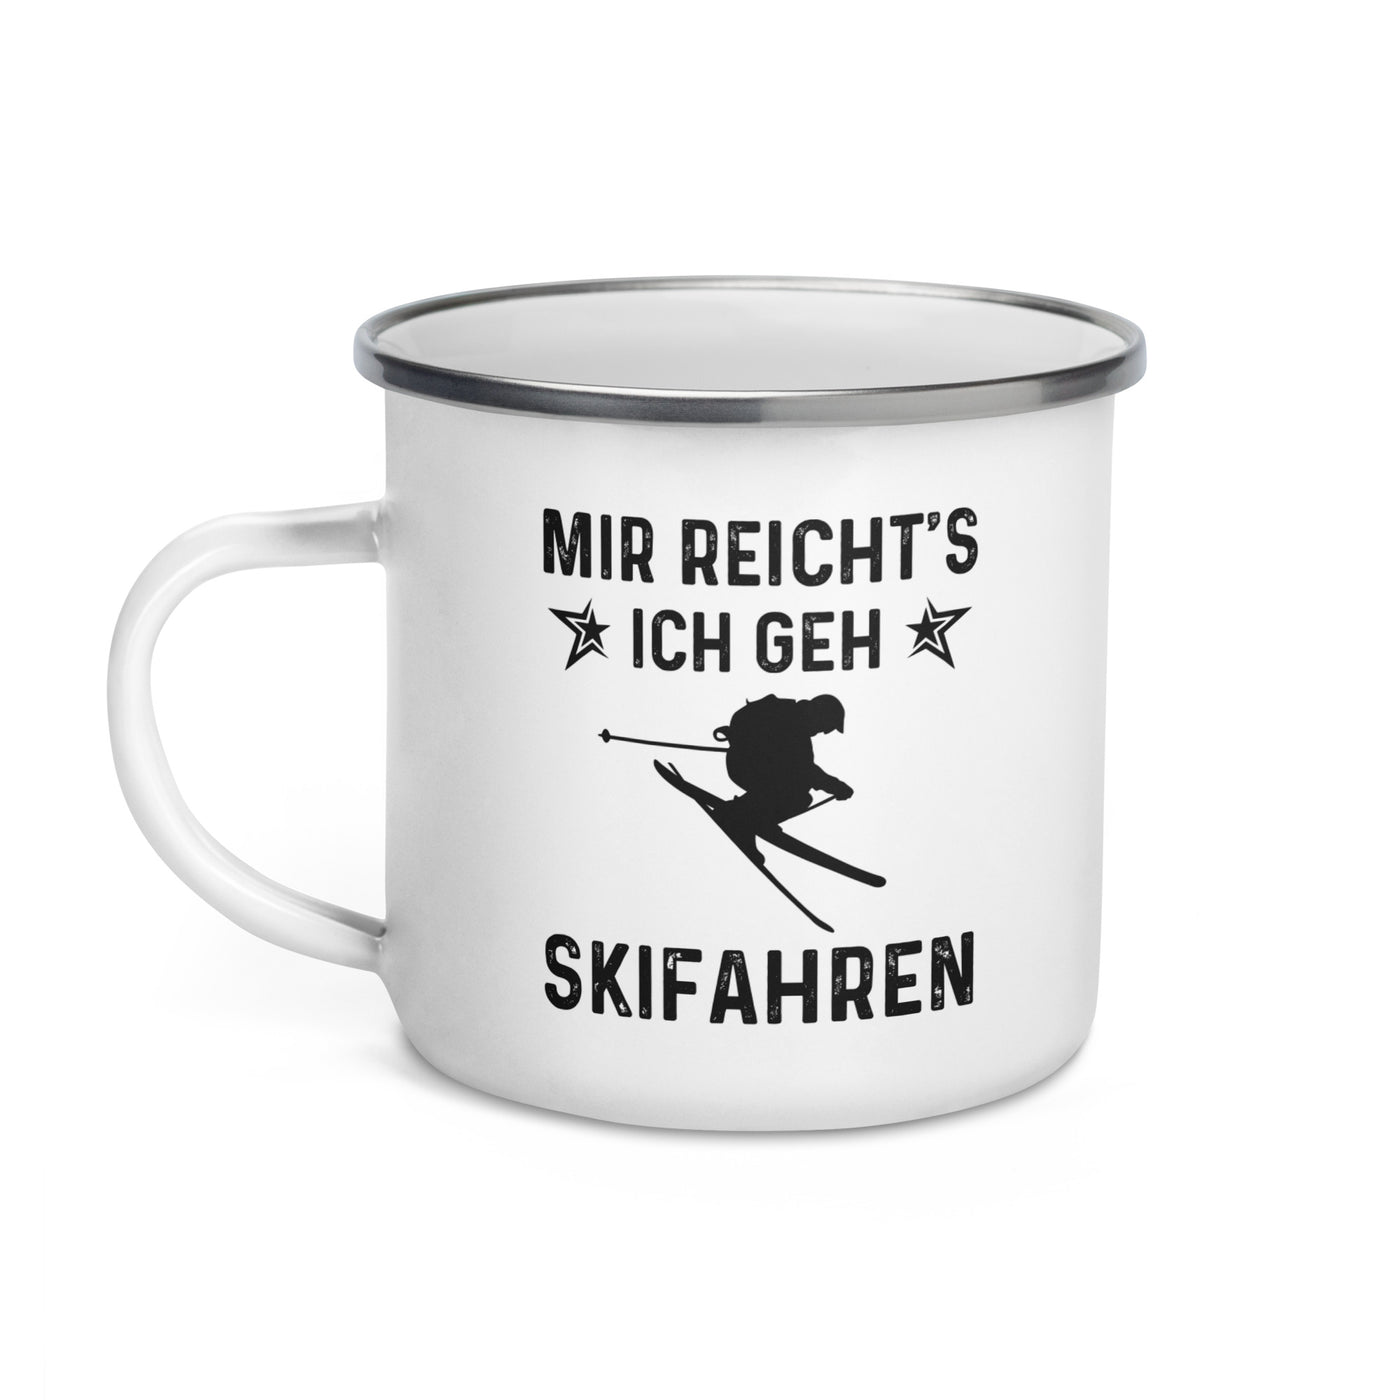 Mir Reicht'S Ich Gen Skifahren - Emaille Tasse ski